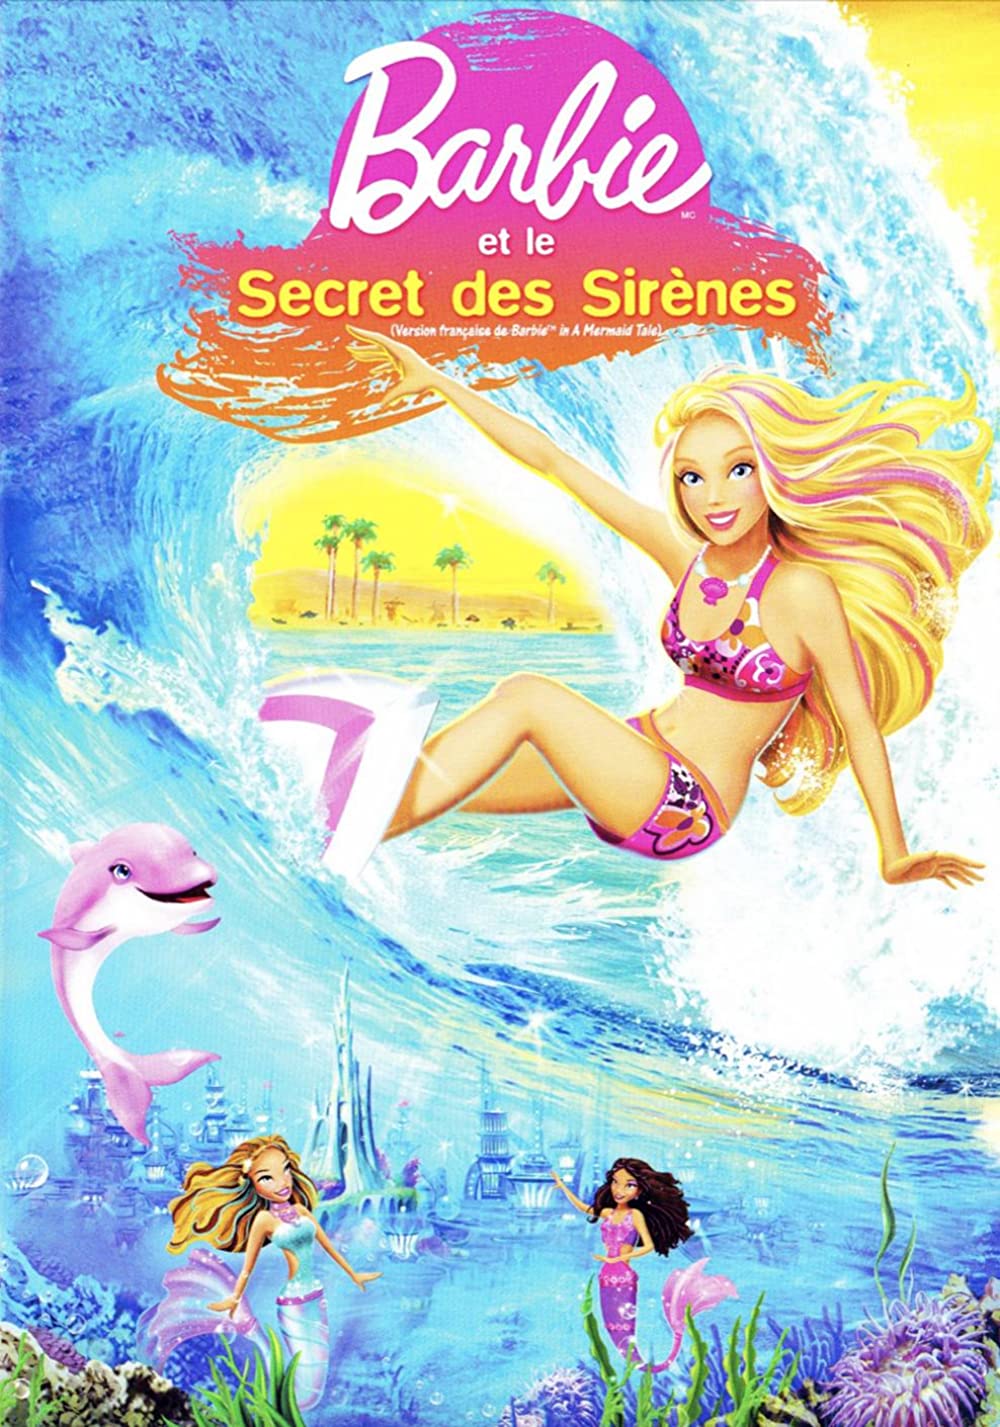 Download Barbie in a Mermaid Tale Movie | Watch Barbie In A Mermaid Tale Divx